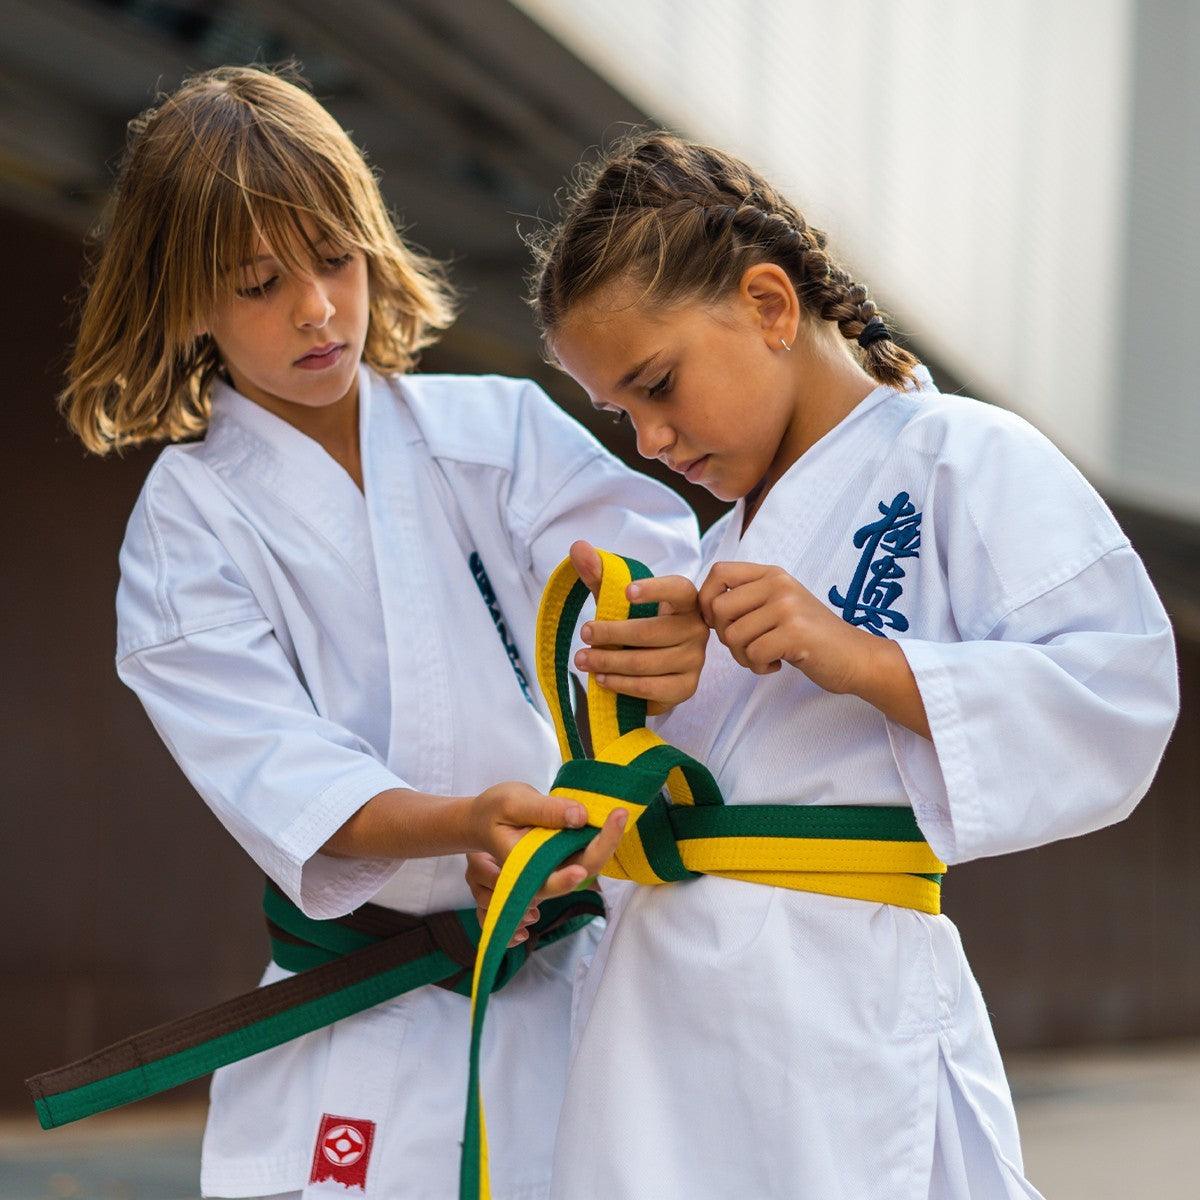 Ceinture officielle Kyokushinkai bicolore Fuji Mae - Boutique des Arts Martiaux et Sports de Combat